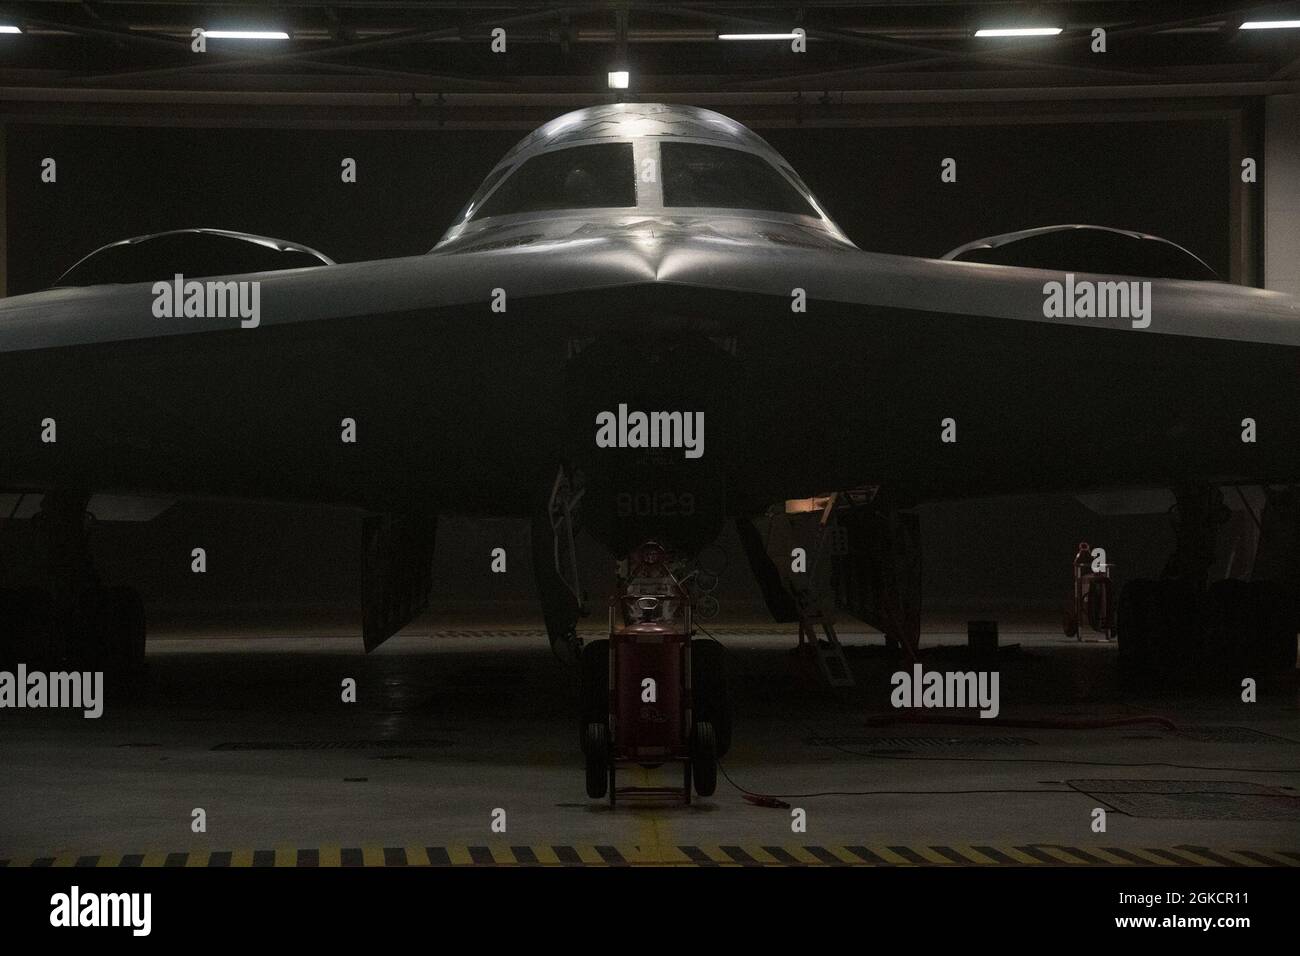 Un bombardero B-2 Spirit Stealth se prepara para el despegue en la Base de la Fuerza Aérea Whiteman, Missouri, el 15 de marzo de 2021. El bombardero sigiloso se asigna al ala de bombas de 509th y está destinado a apoyar las operaciones de la Fuerza de Tarea de Bomber, lo que permite a los equipos mantener un alto estado de preparación y validar las capacidades de ataque mundial de la Fuerza Aérea de EE.UU. En cualquier momento y lugar. Foto de stock